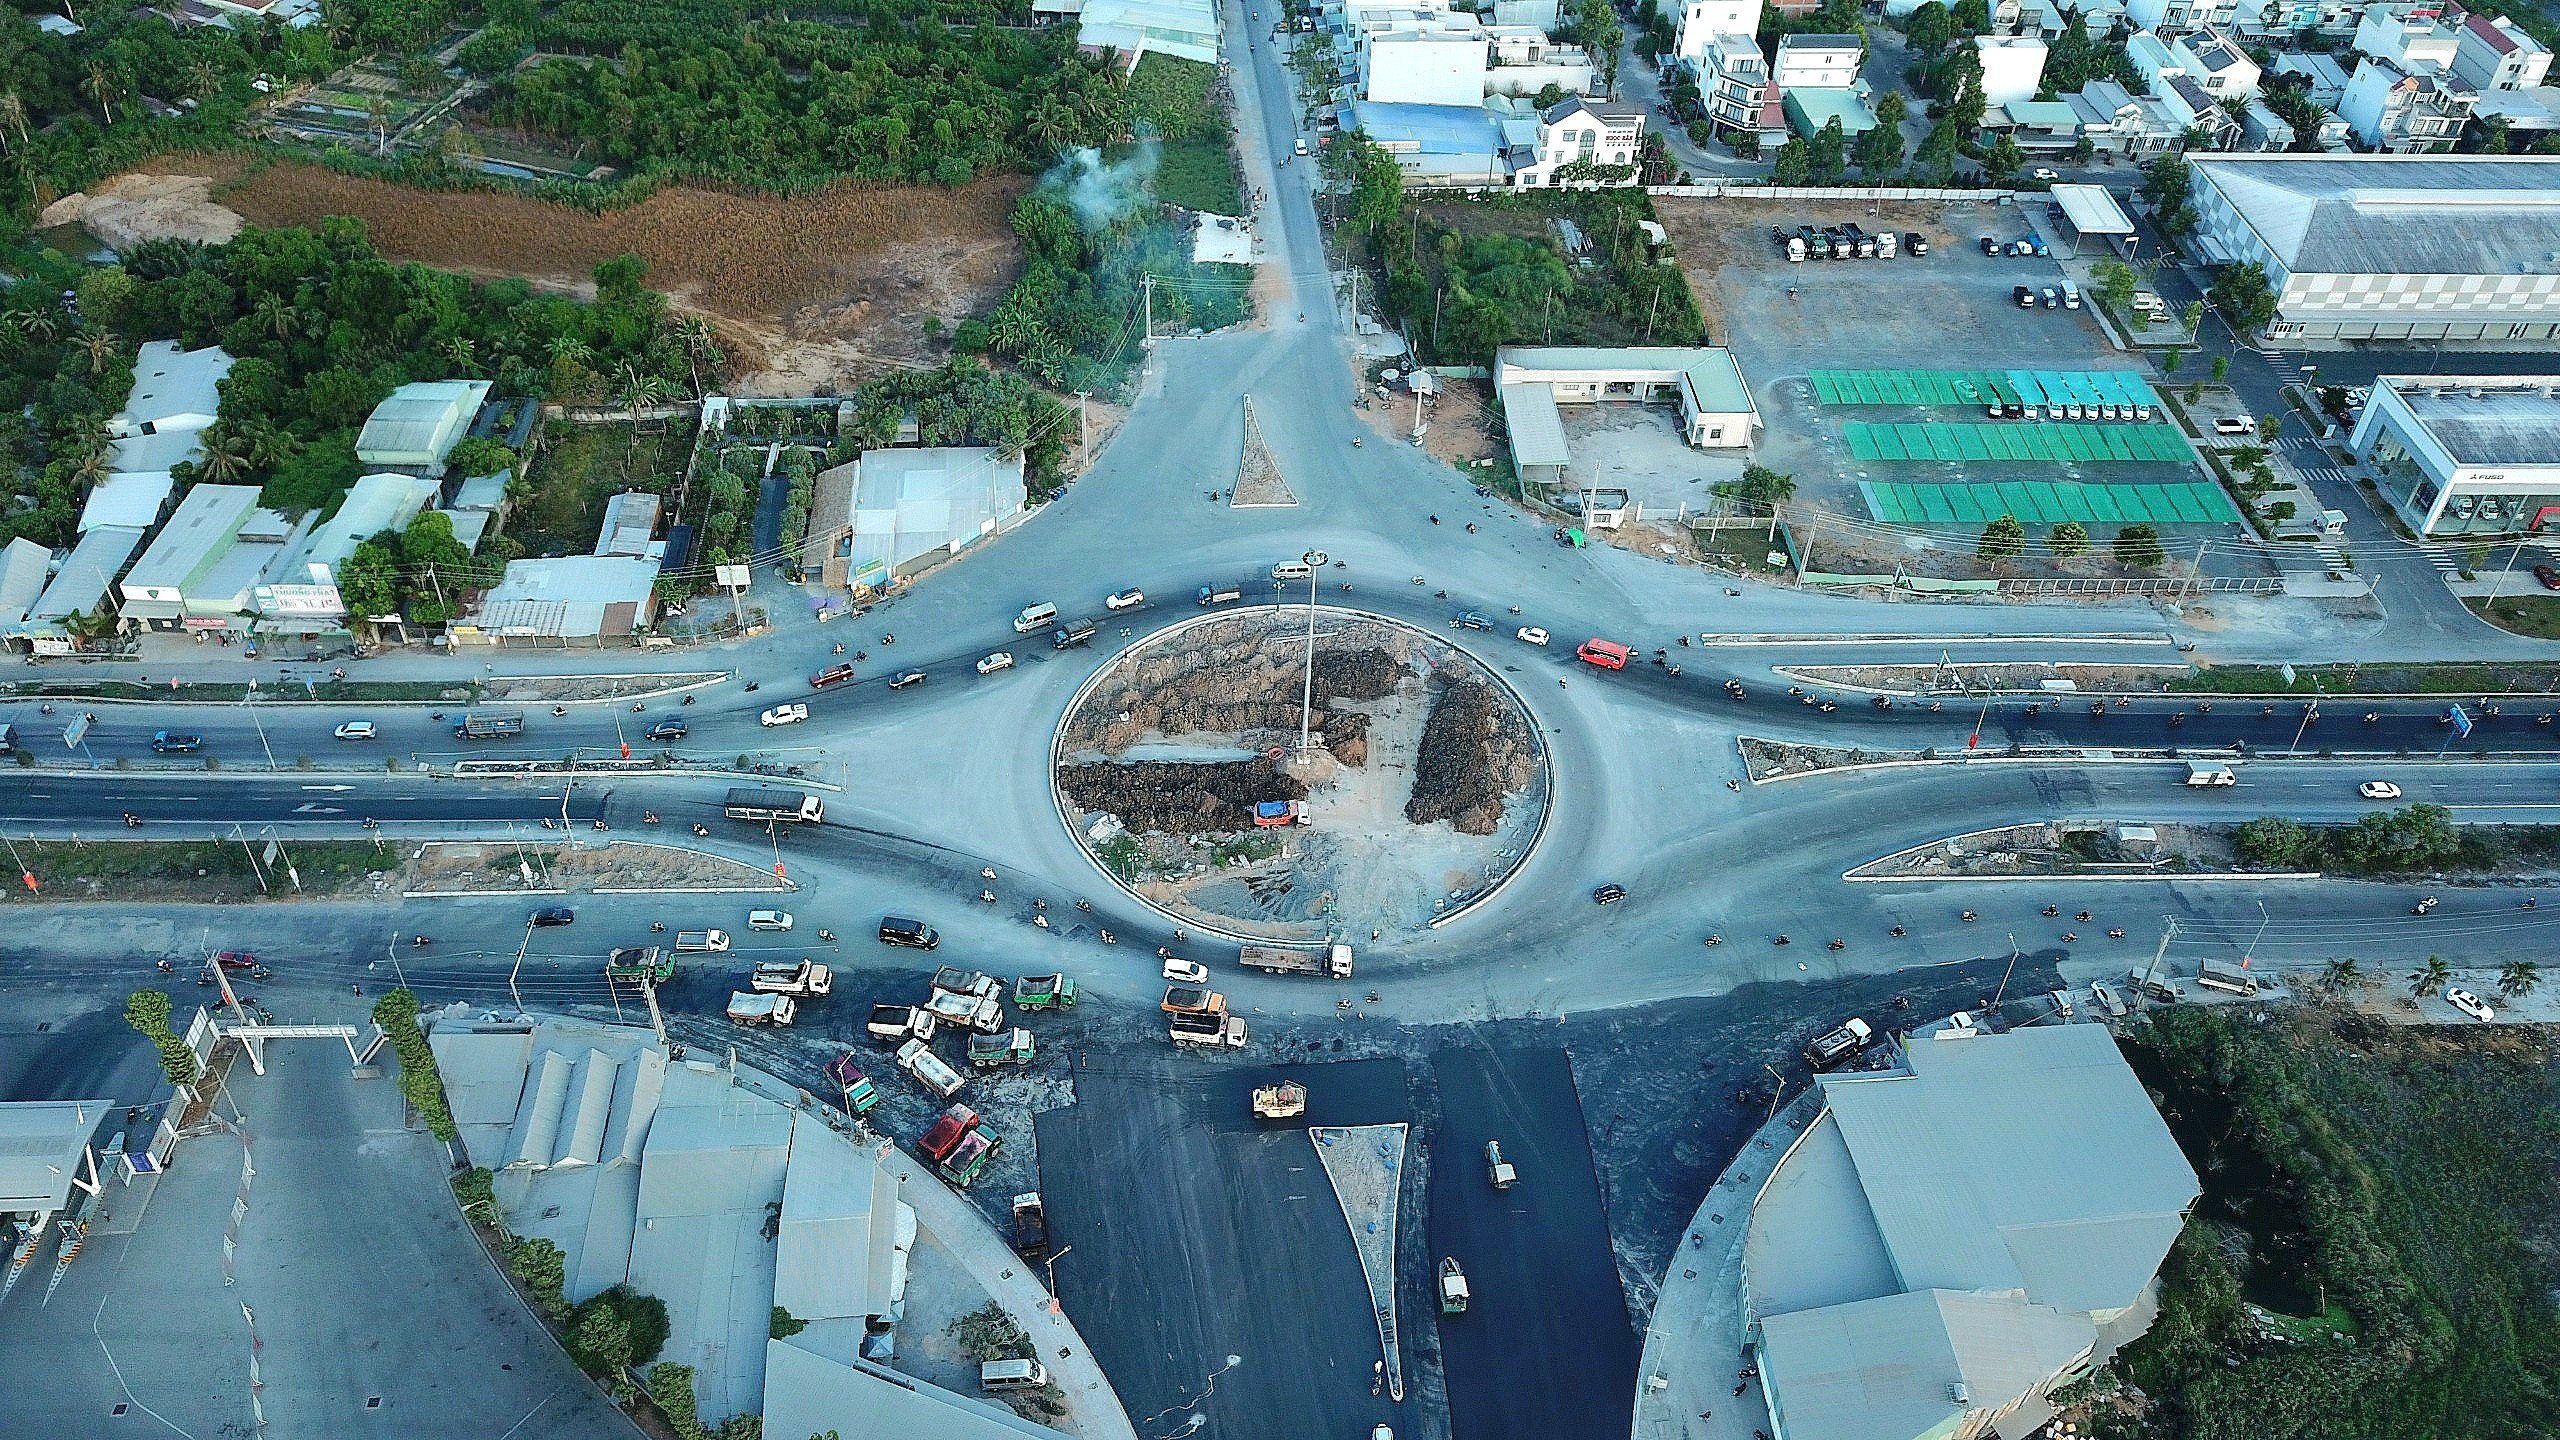 Vòng xoay đường dẫn vào cầu Trần Hoàng Na đoạn trên quốc lộ 1A đang dần được hoàn thiện.